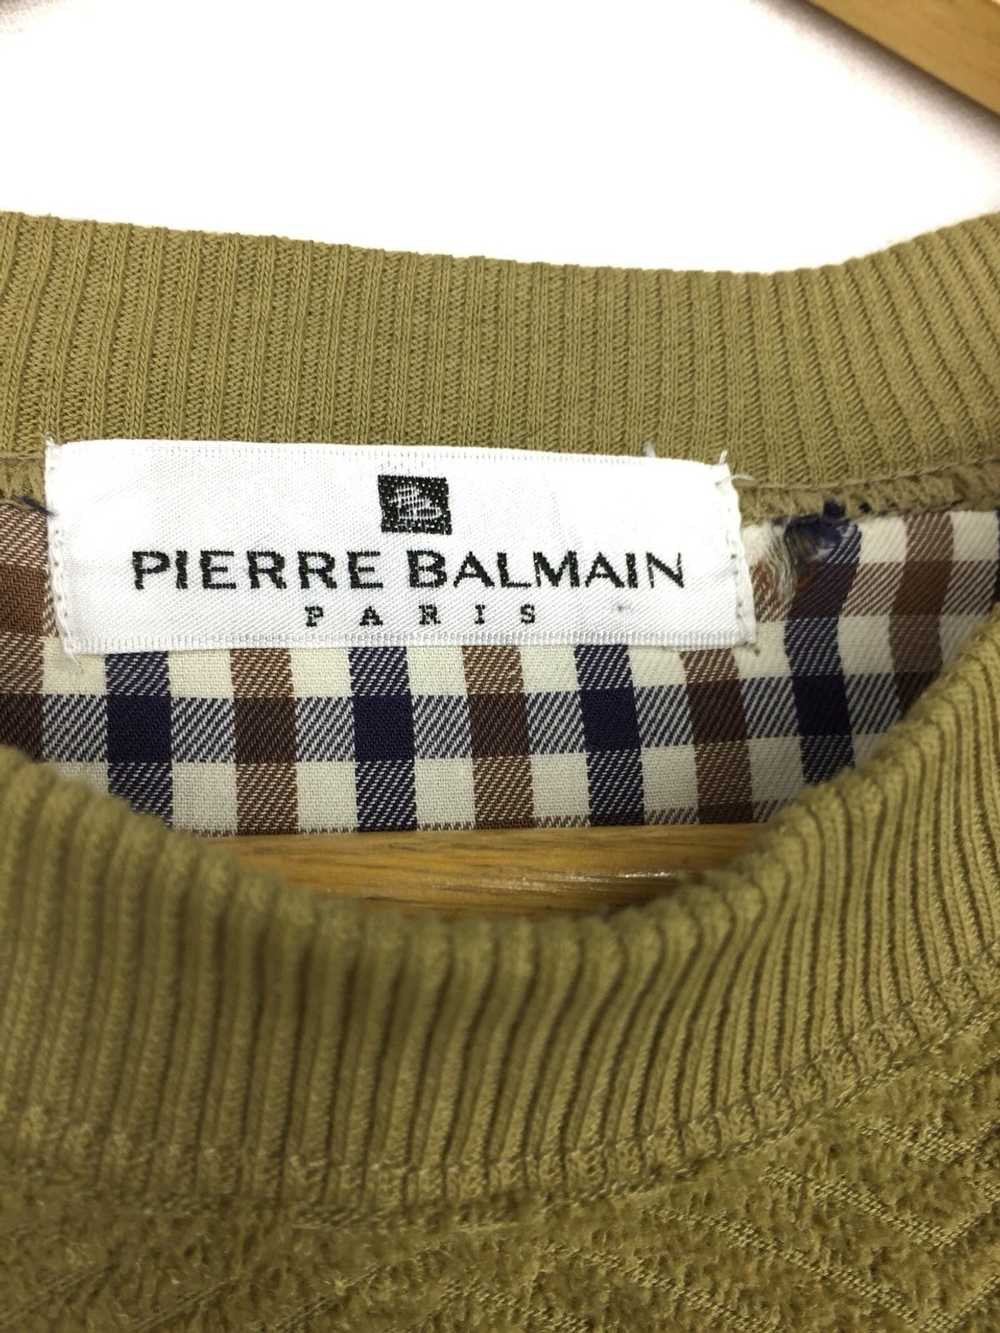 Balmain × Pierre Balmain Pierre Balmain Sweatshirt - image 5